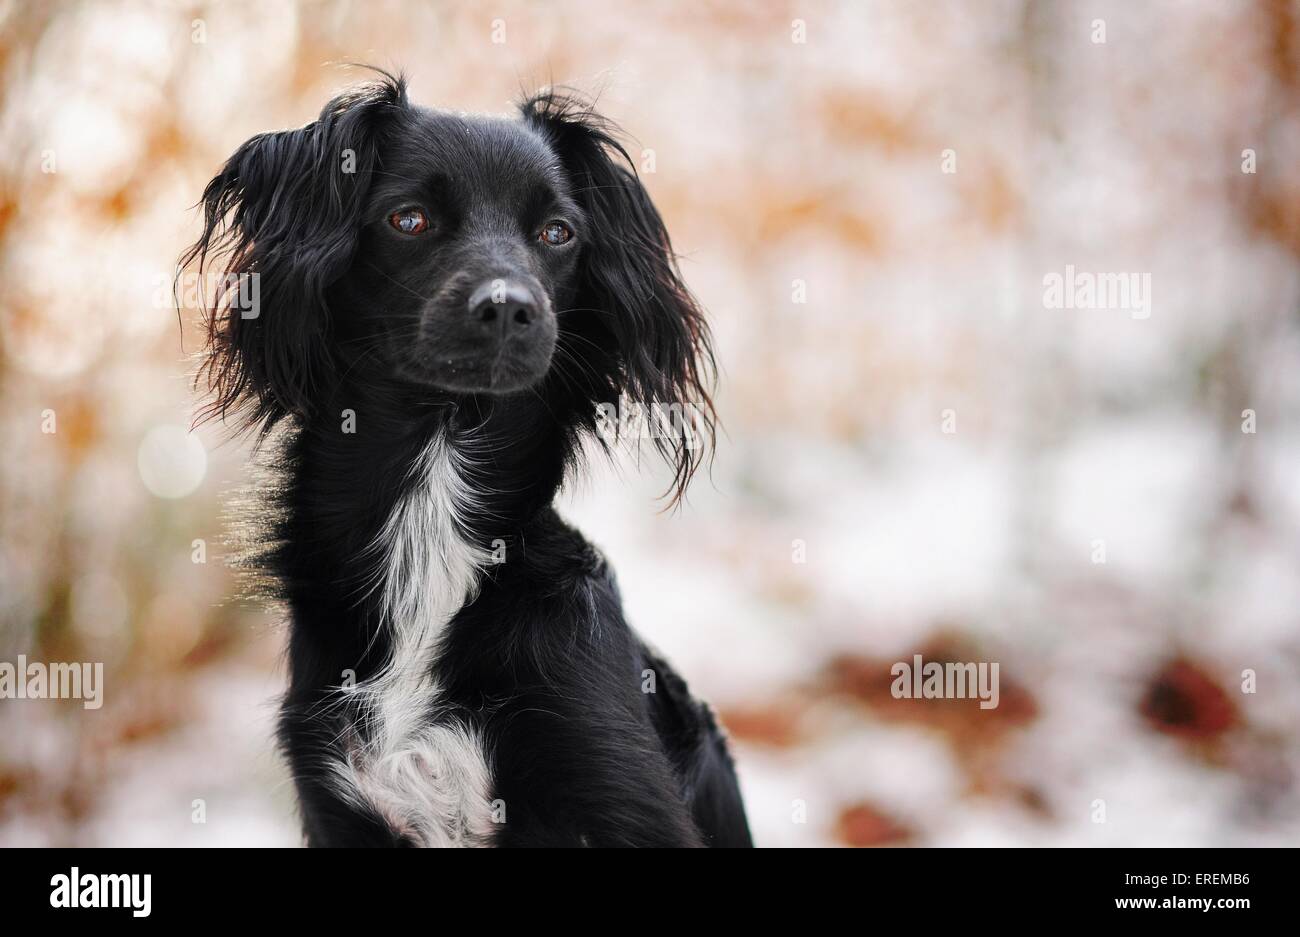 Markiesje im Schnee Stockfotografie - Alamy